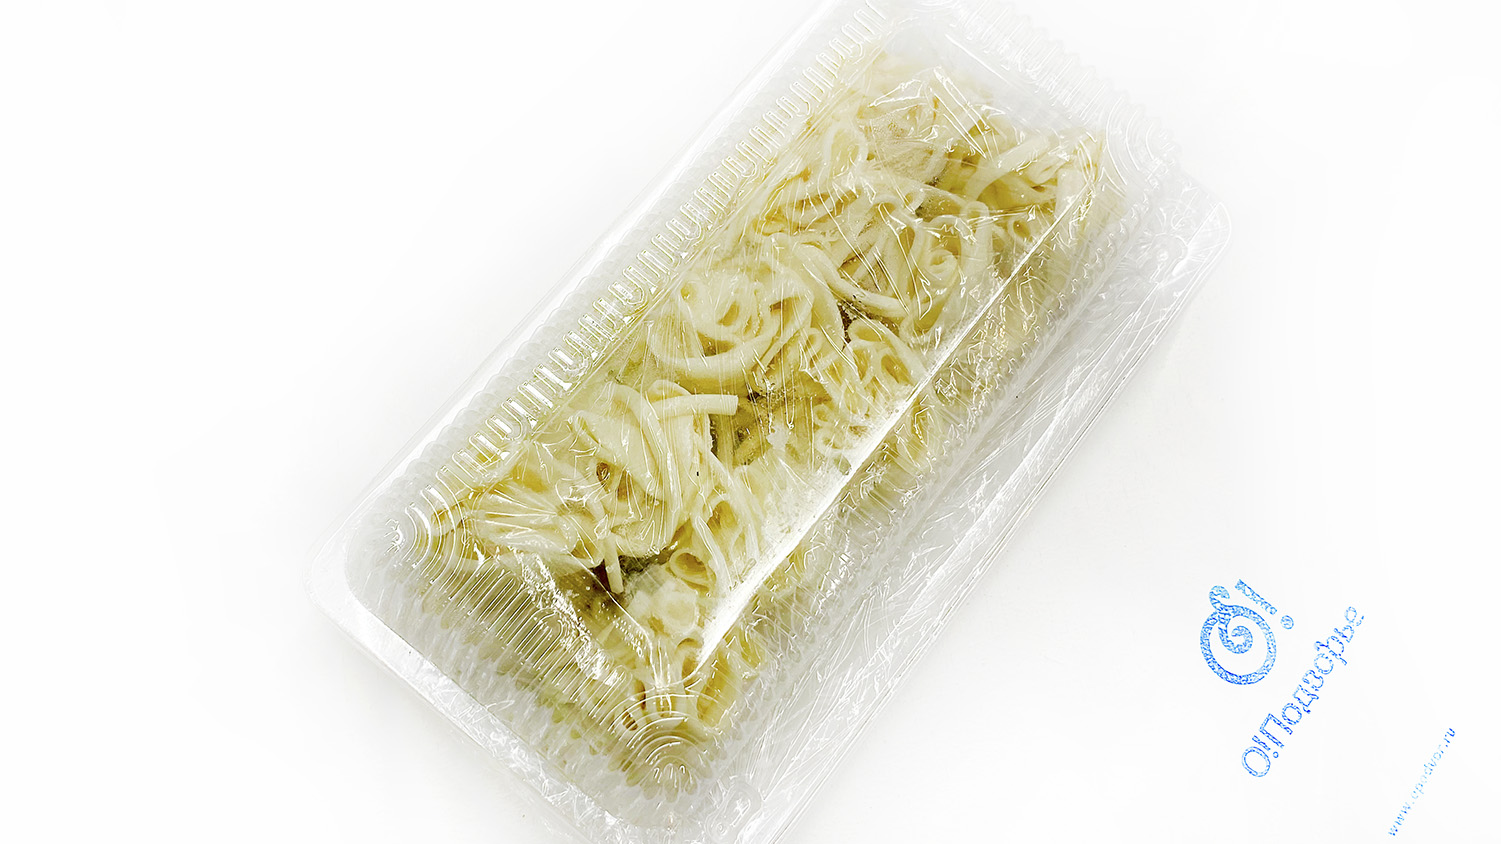 Мини "хинкали" сулугуни 1 упаковка 0,5 кг (Домашняя продукция рязанского края)